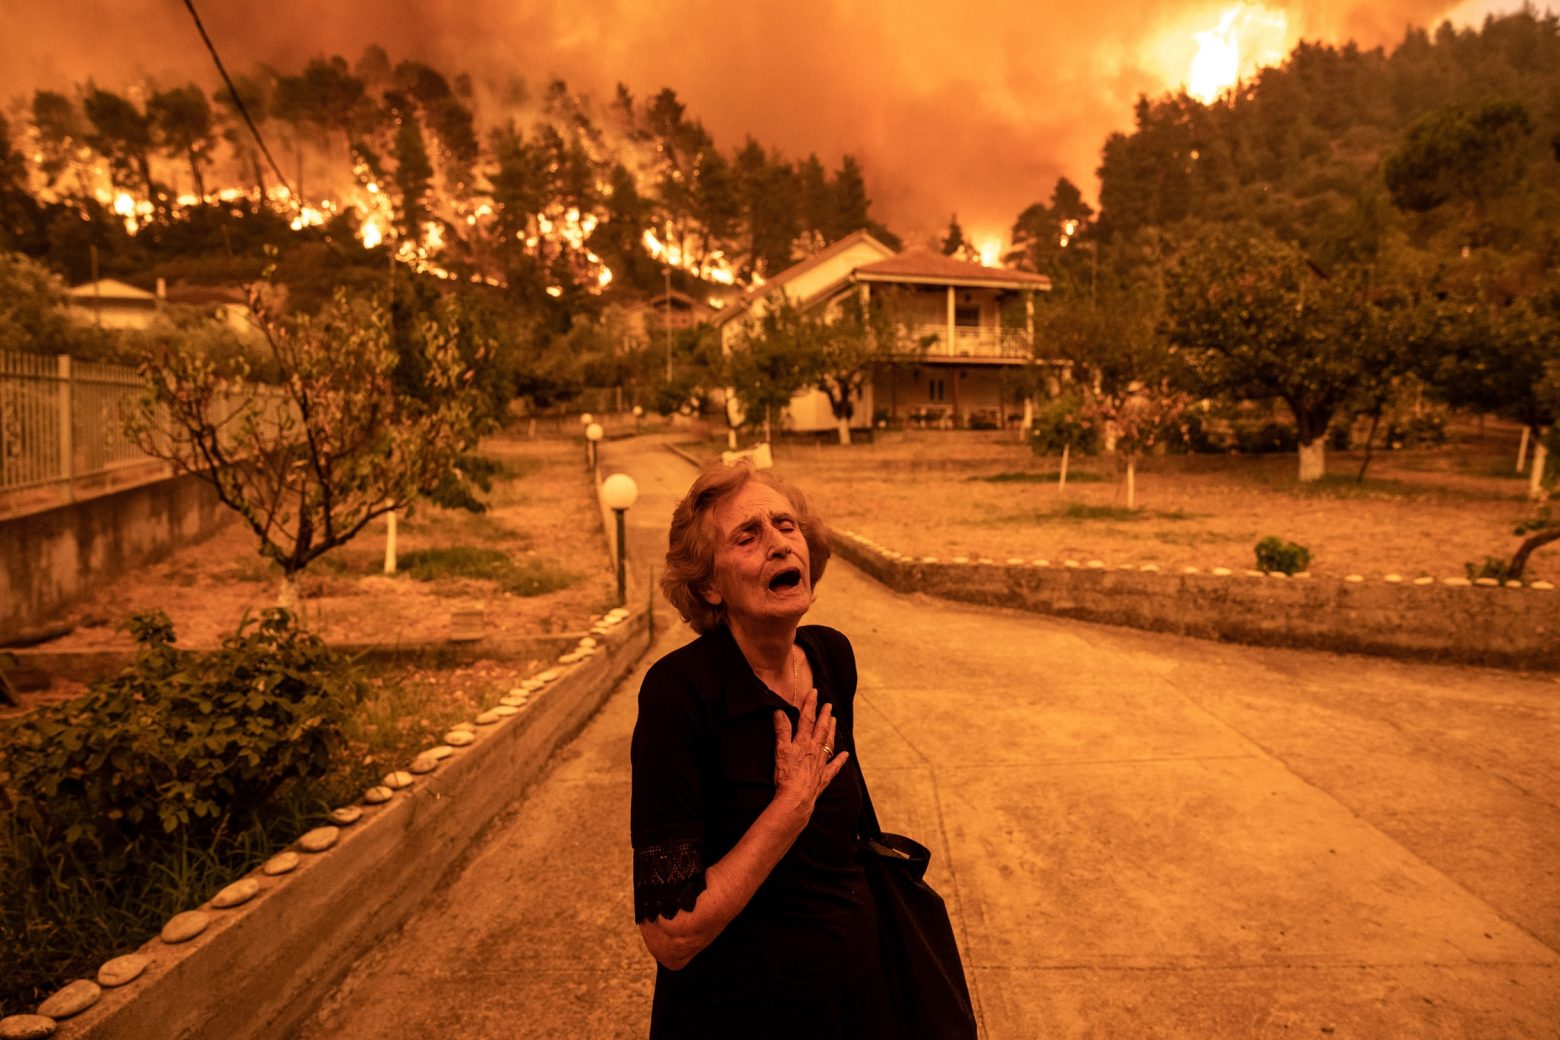 Οι 20 φωτογραφίες για την κλιματική αλλαγή που άλλαξαν τον κόσμο - Ανάμεσά τους ένας Έλληνας φωτογράφος